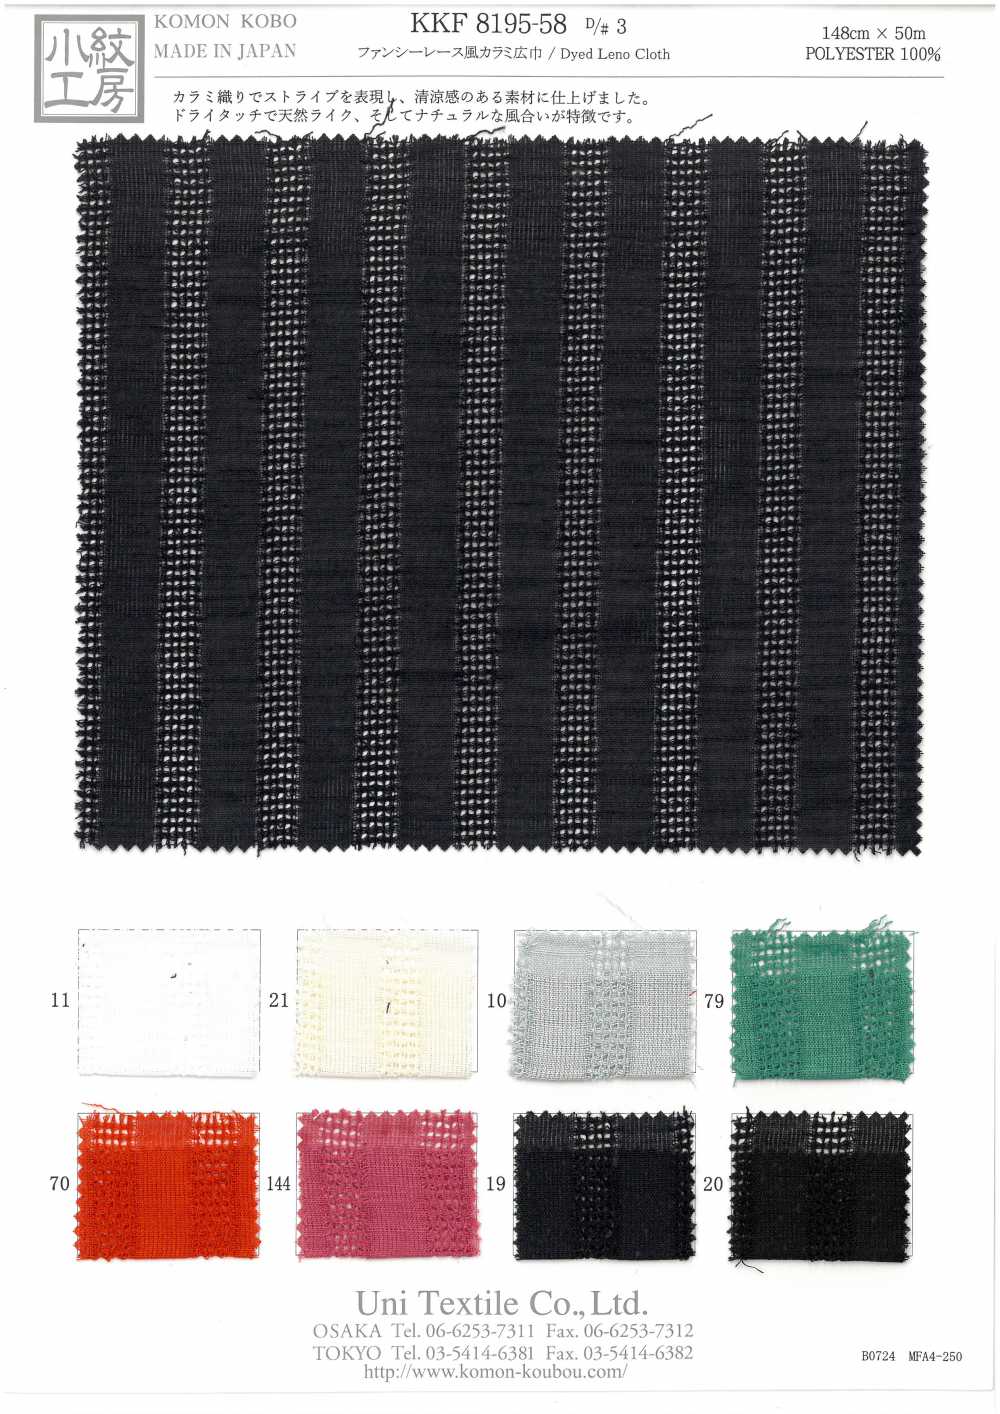 KKF8195-58-D/3 Tessuto Leno In Stile Pizzo Fantasia[Tessile / Tessuto] Uni Textile